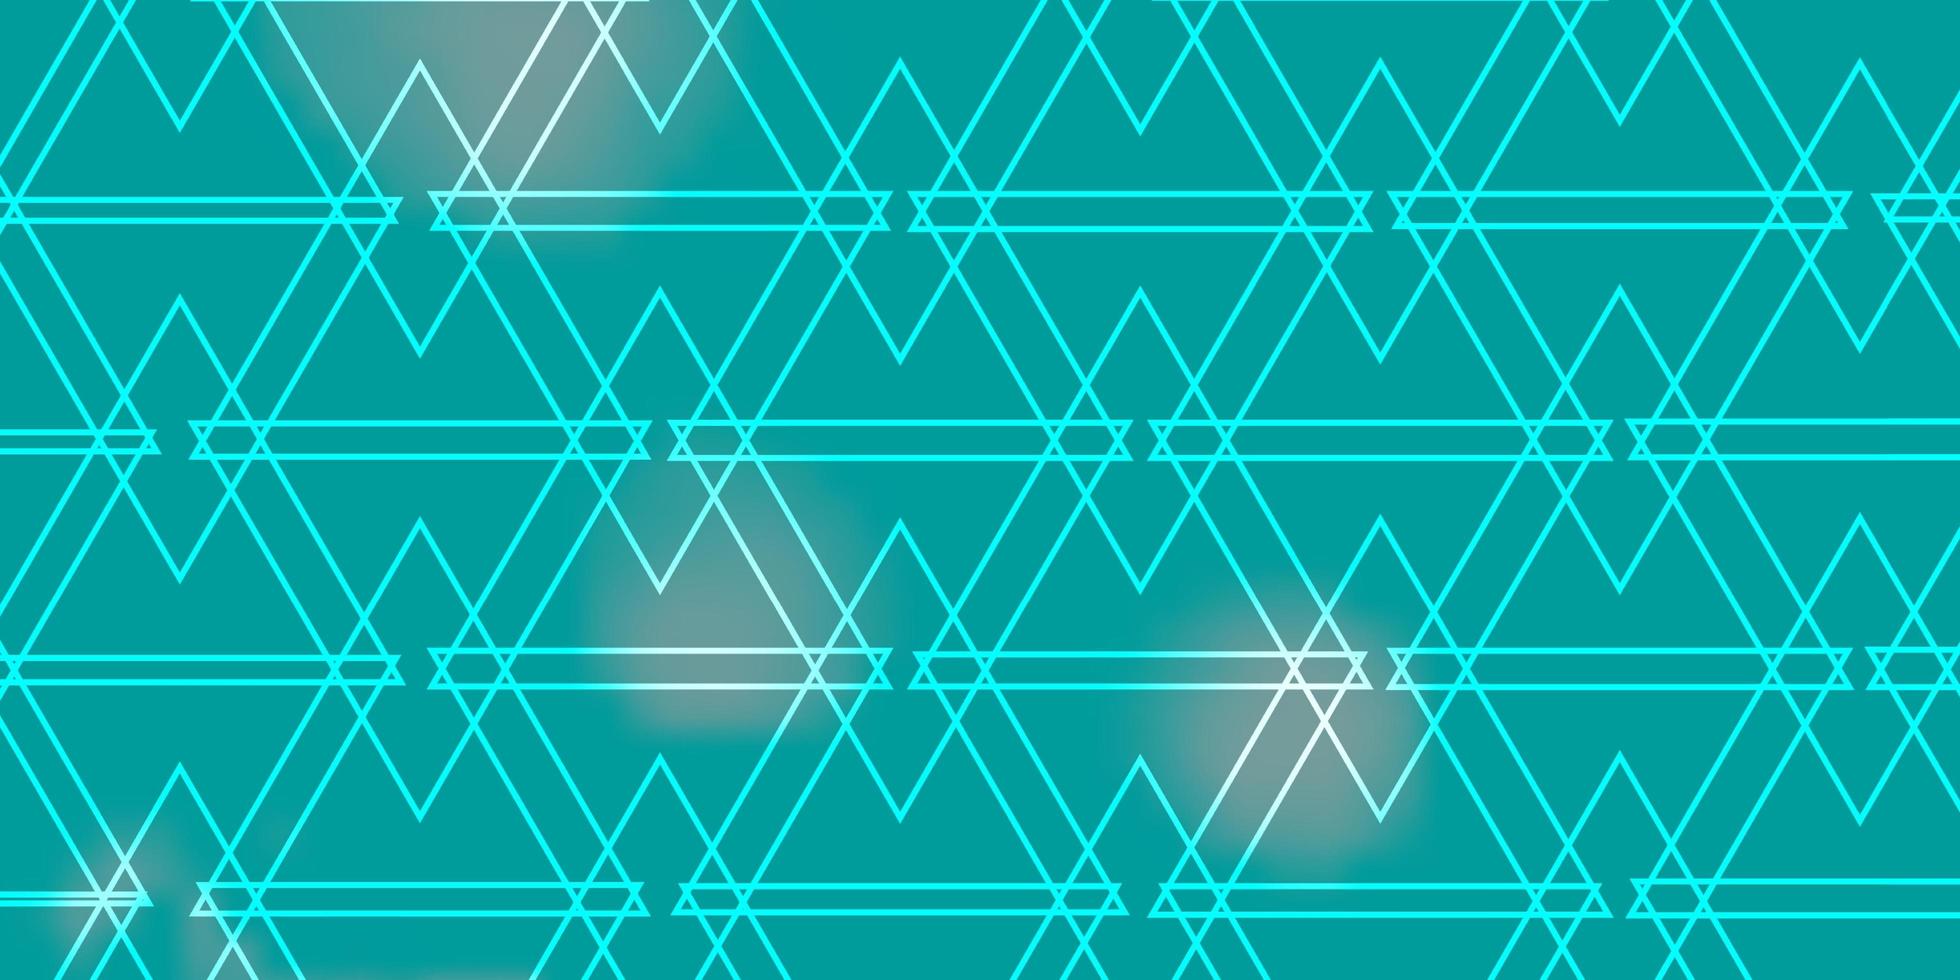 lichtblauw groene vector achtergrond met lijnen driehoeken moderne gradiënt illustratie met kleurrijke driehoeken sjabloon voor bestemmingspagina's